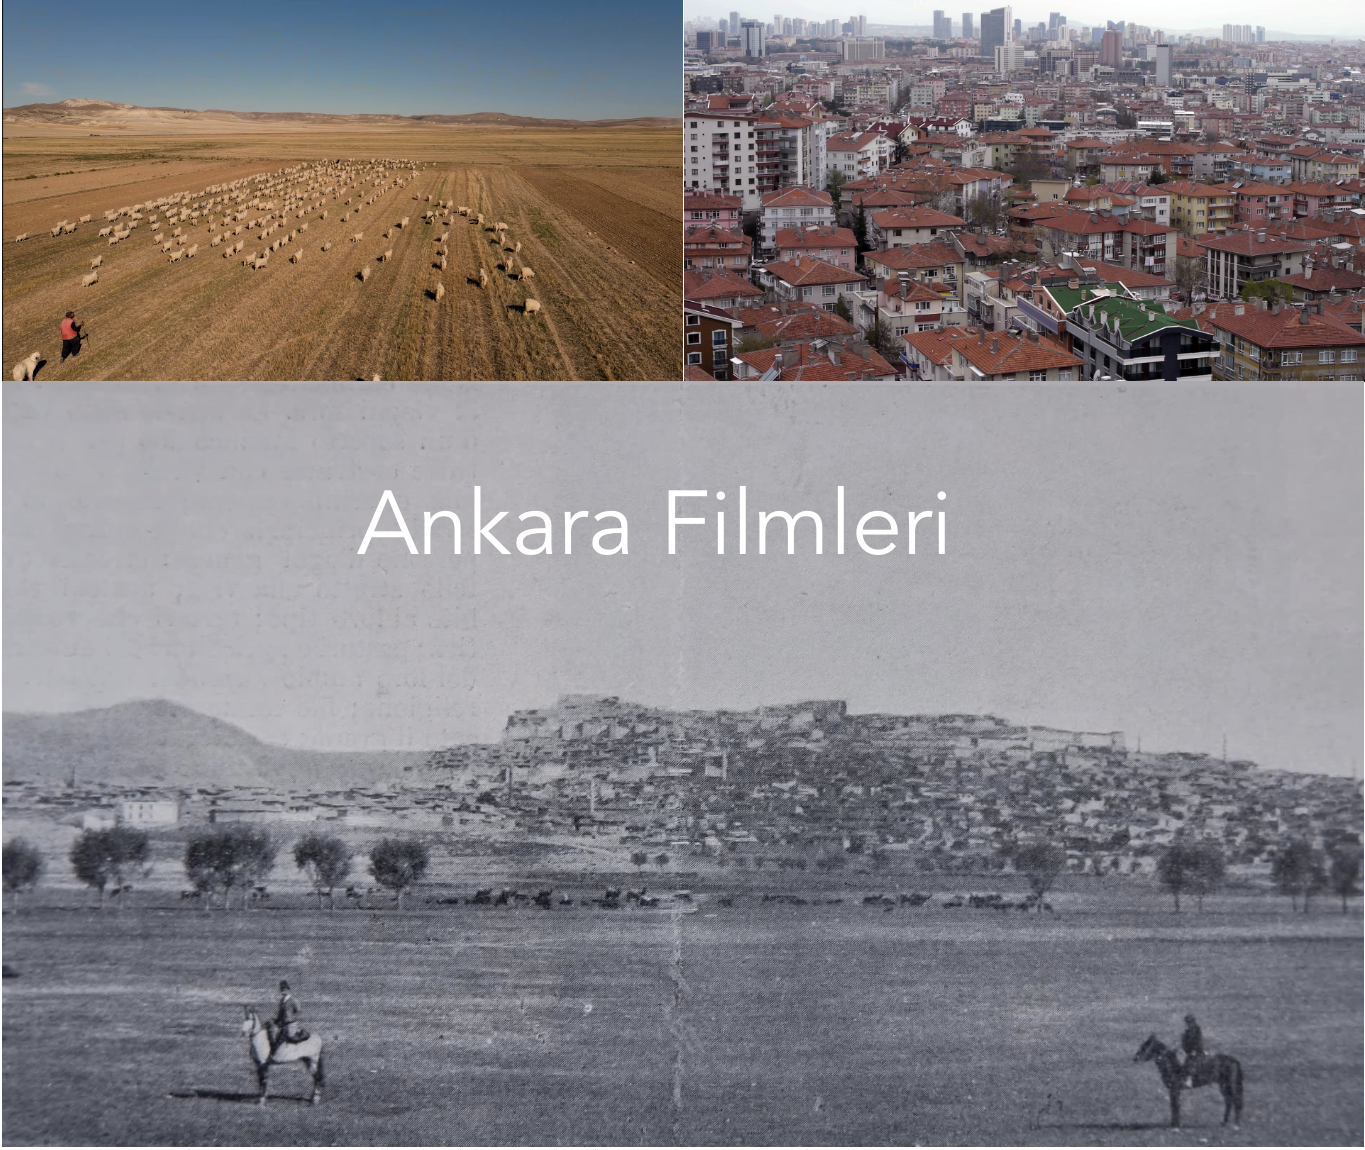 Ankara Filmleri / Ankara Films